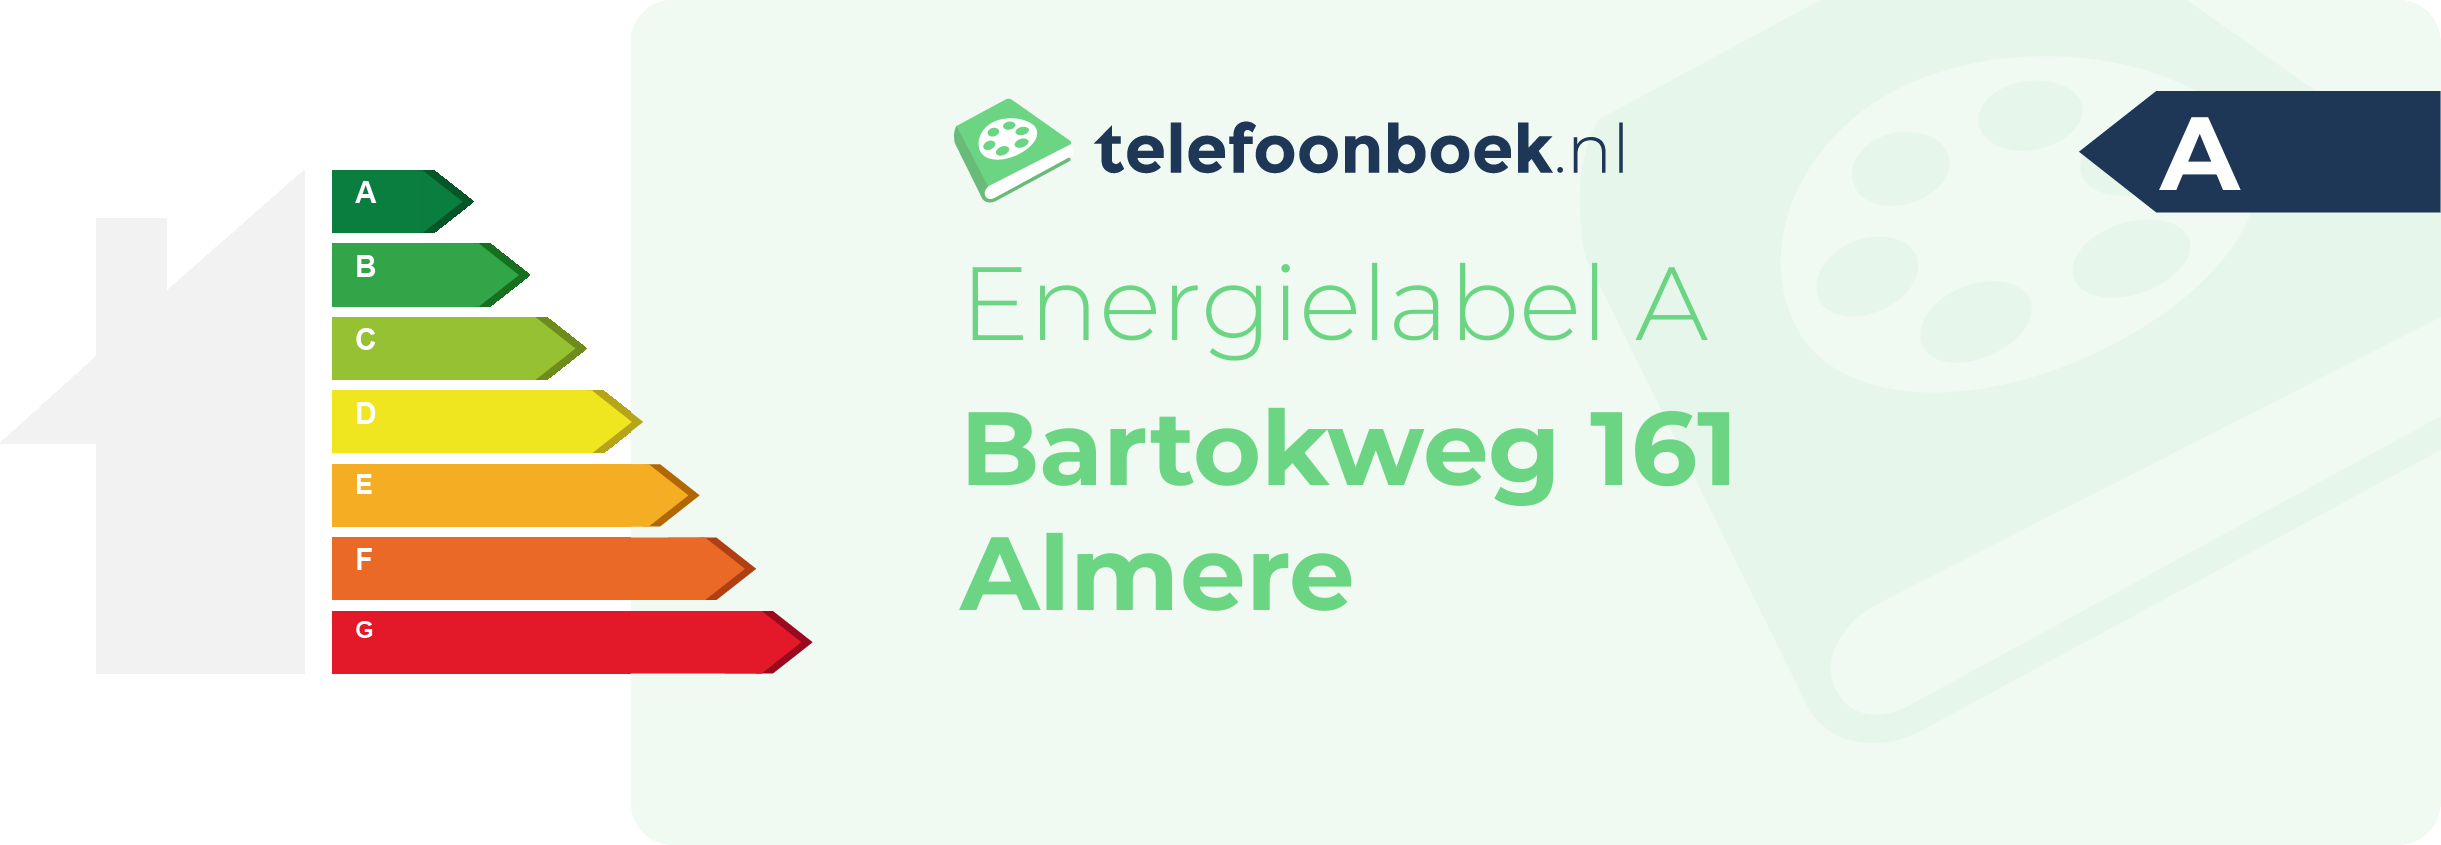 Energielabel Bartokweg 161 Almere